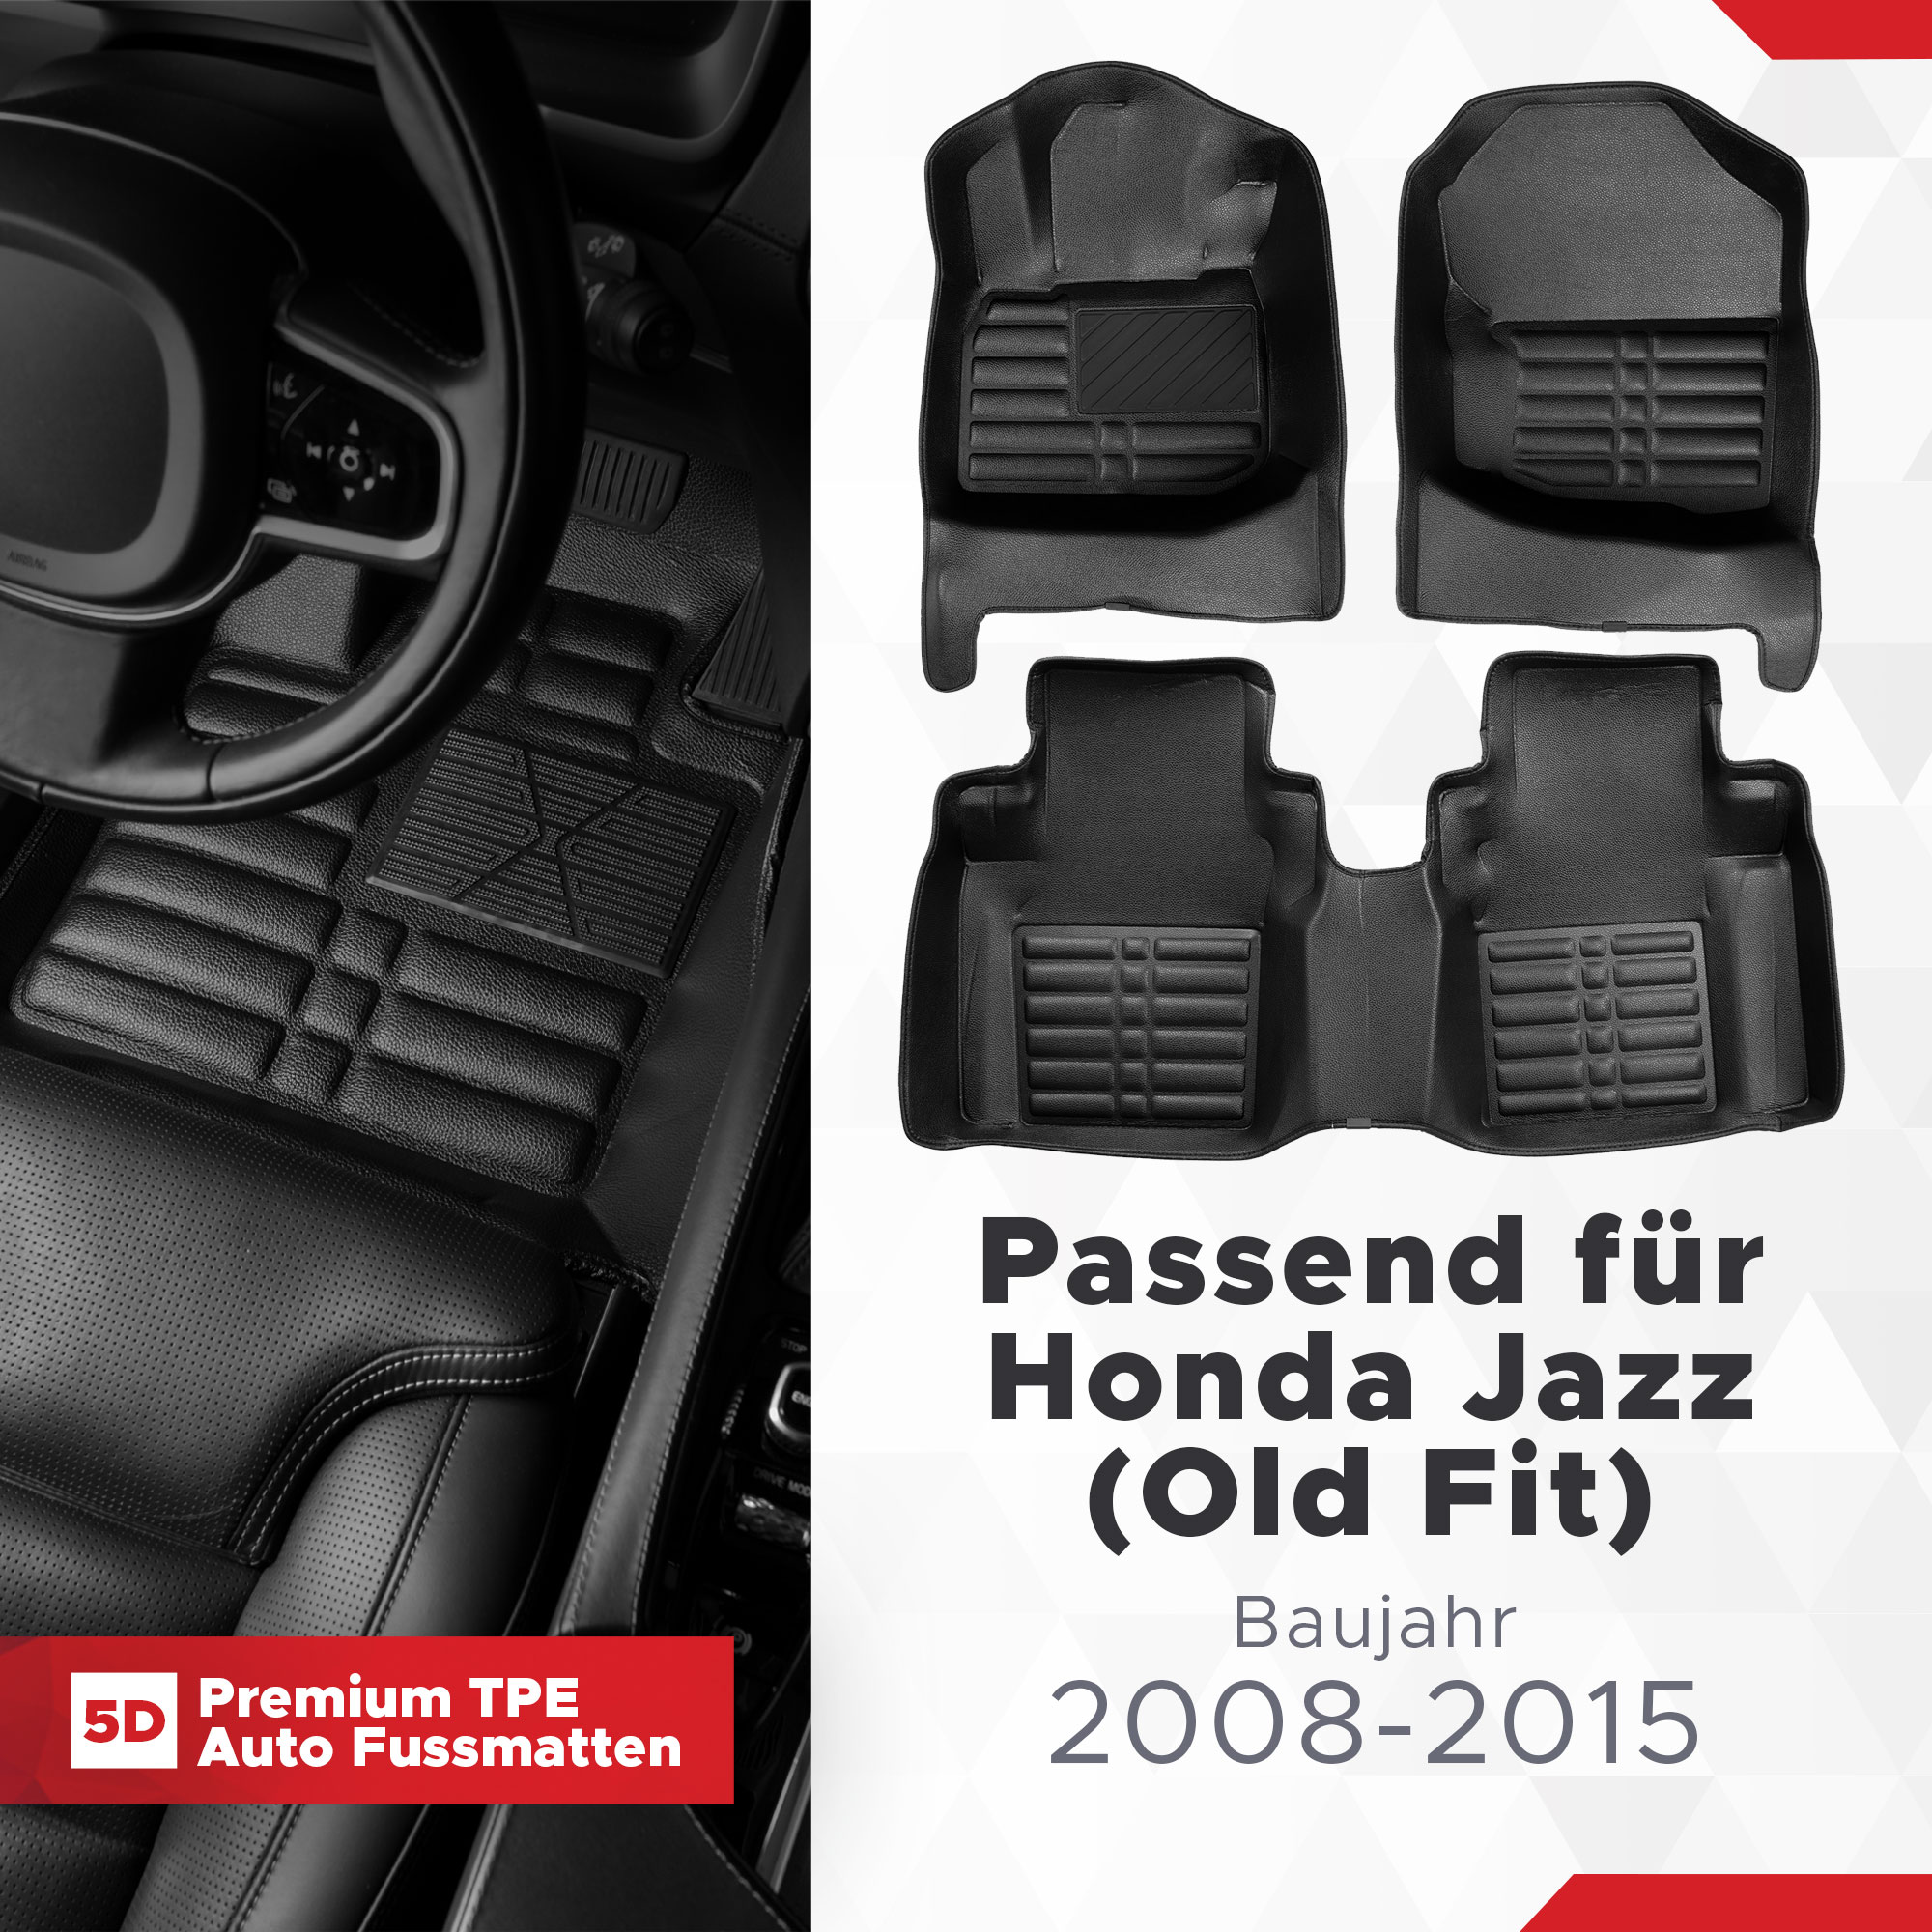 5D Premium Auto Fussmatten TPE Set passend für Honda Jazz ( Old Fit )  Baujahr 2008-2015